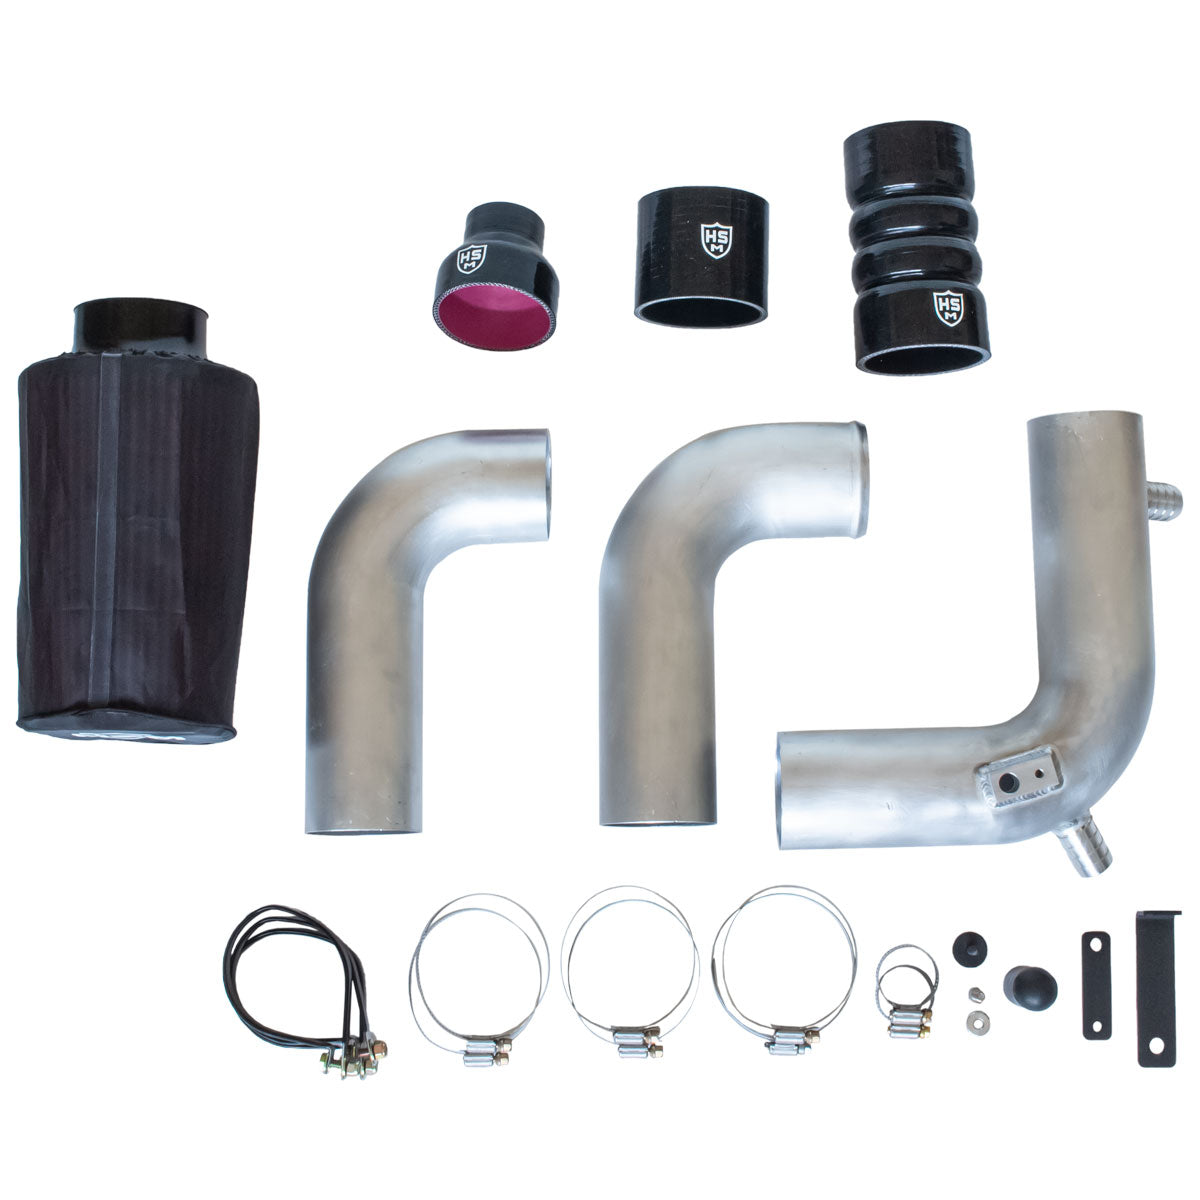 
                  
                    RZR Performance Air Intake Kit - XP Turbo - H&S Motorsports
                  
                